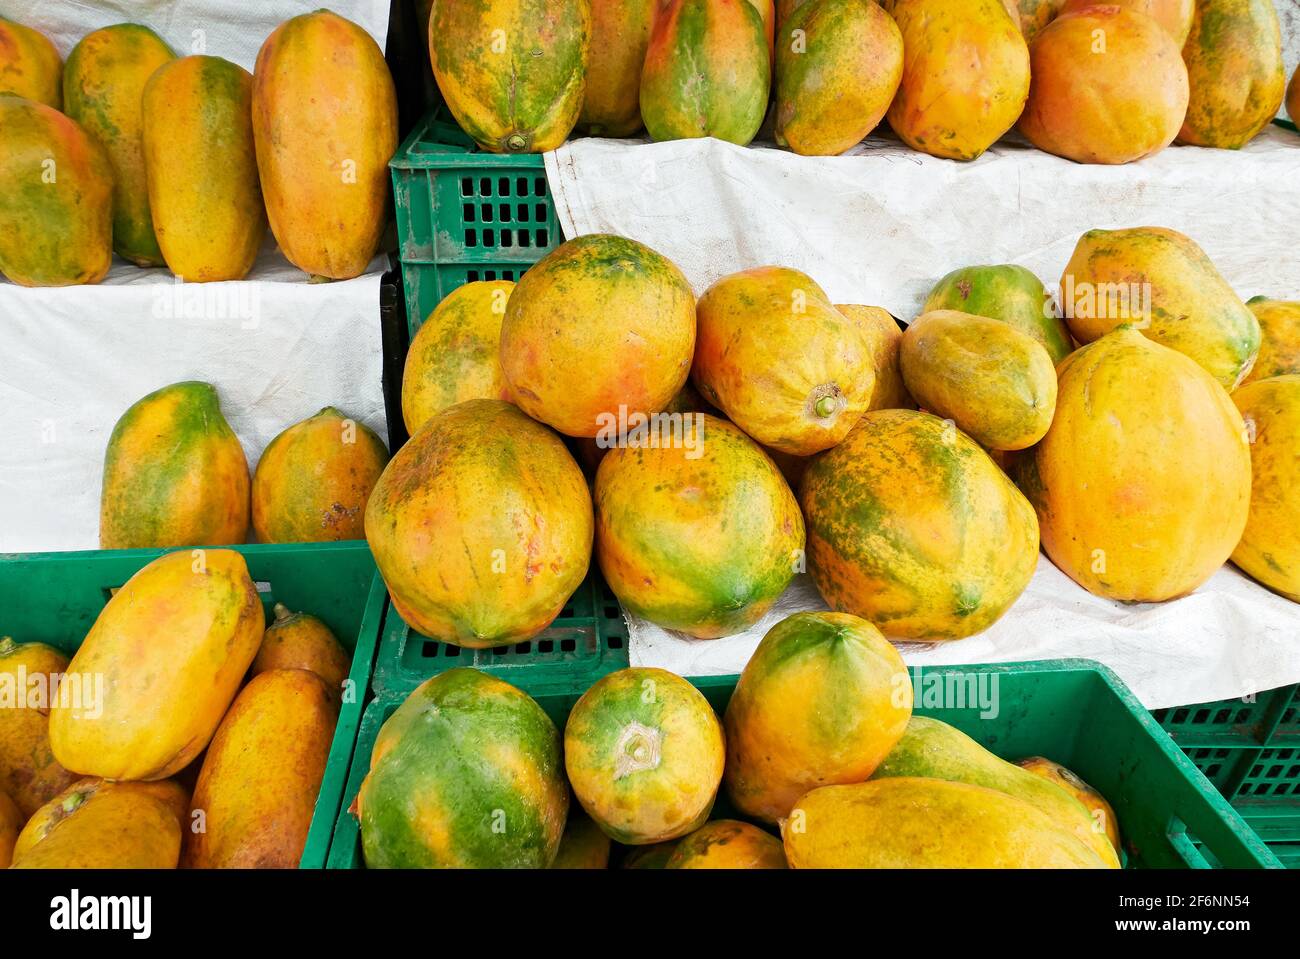 Vasta gamma di frutti di papaia maturi colorati che si posano sugli scaffali, circondati da vassoi verdi, per la vendita in un mercato di strada nelle Filippine, Asia Foto Stock